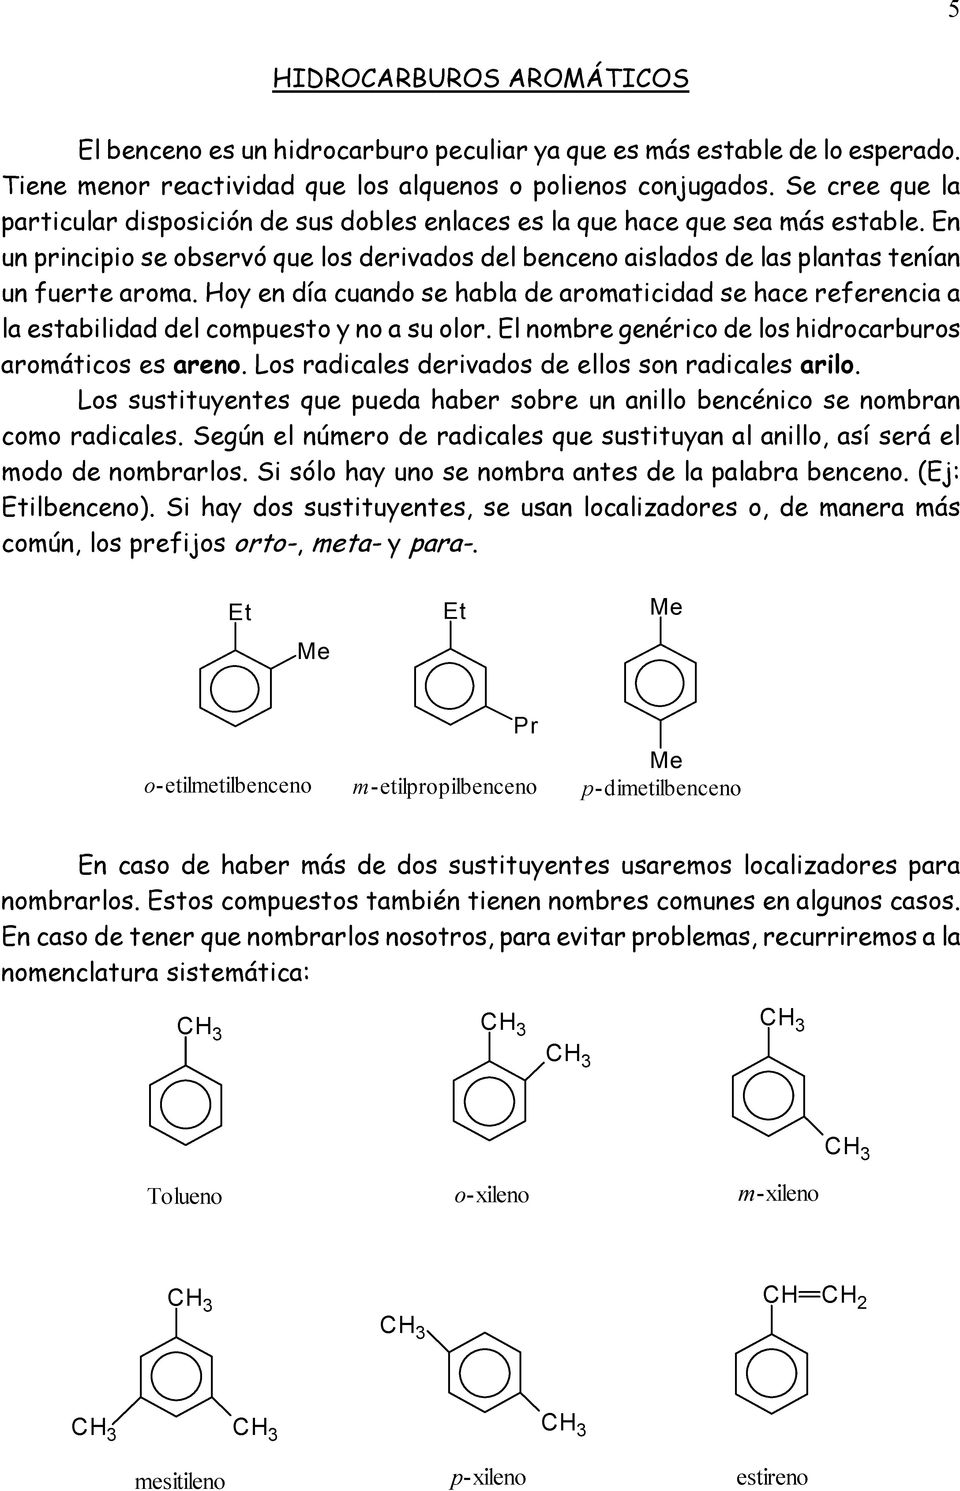 Hoy en día cuando se habla de aromaticidad se hace referencia a la estabilidad del compuesto y no a su olor. El nombre genérico de los hidrocarburos aromáticos es areno.